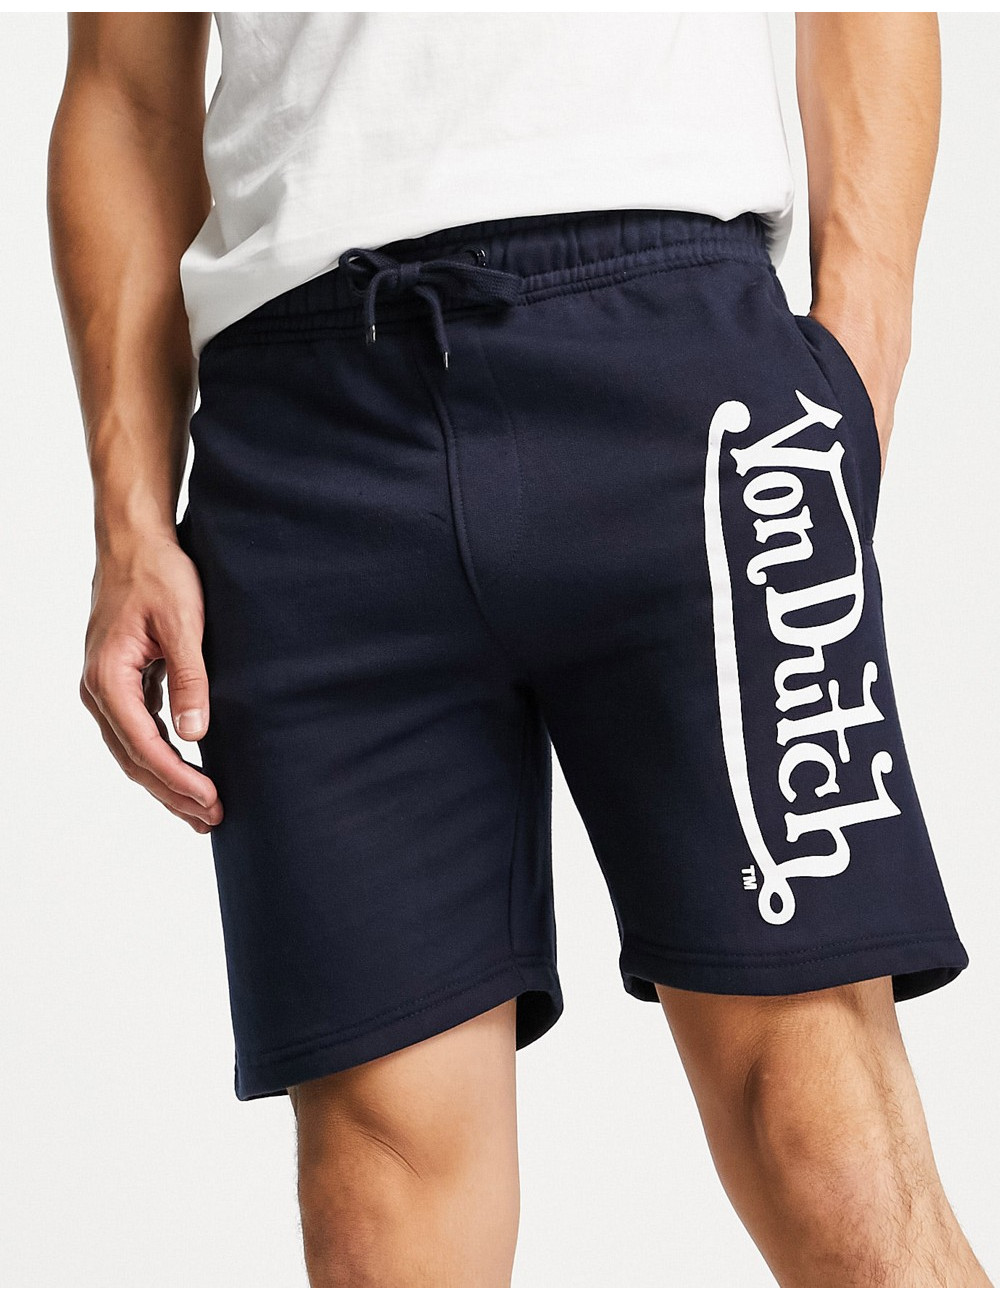 Von Dutch diffusion shorts...